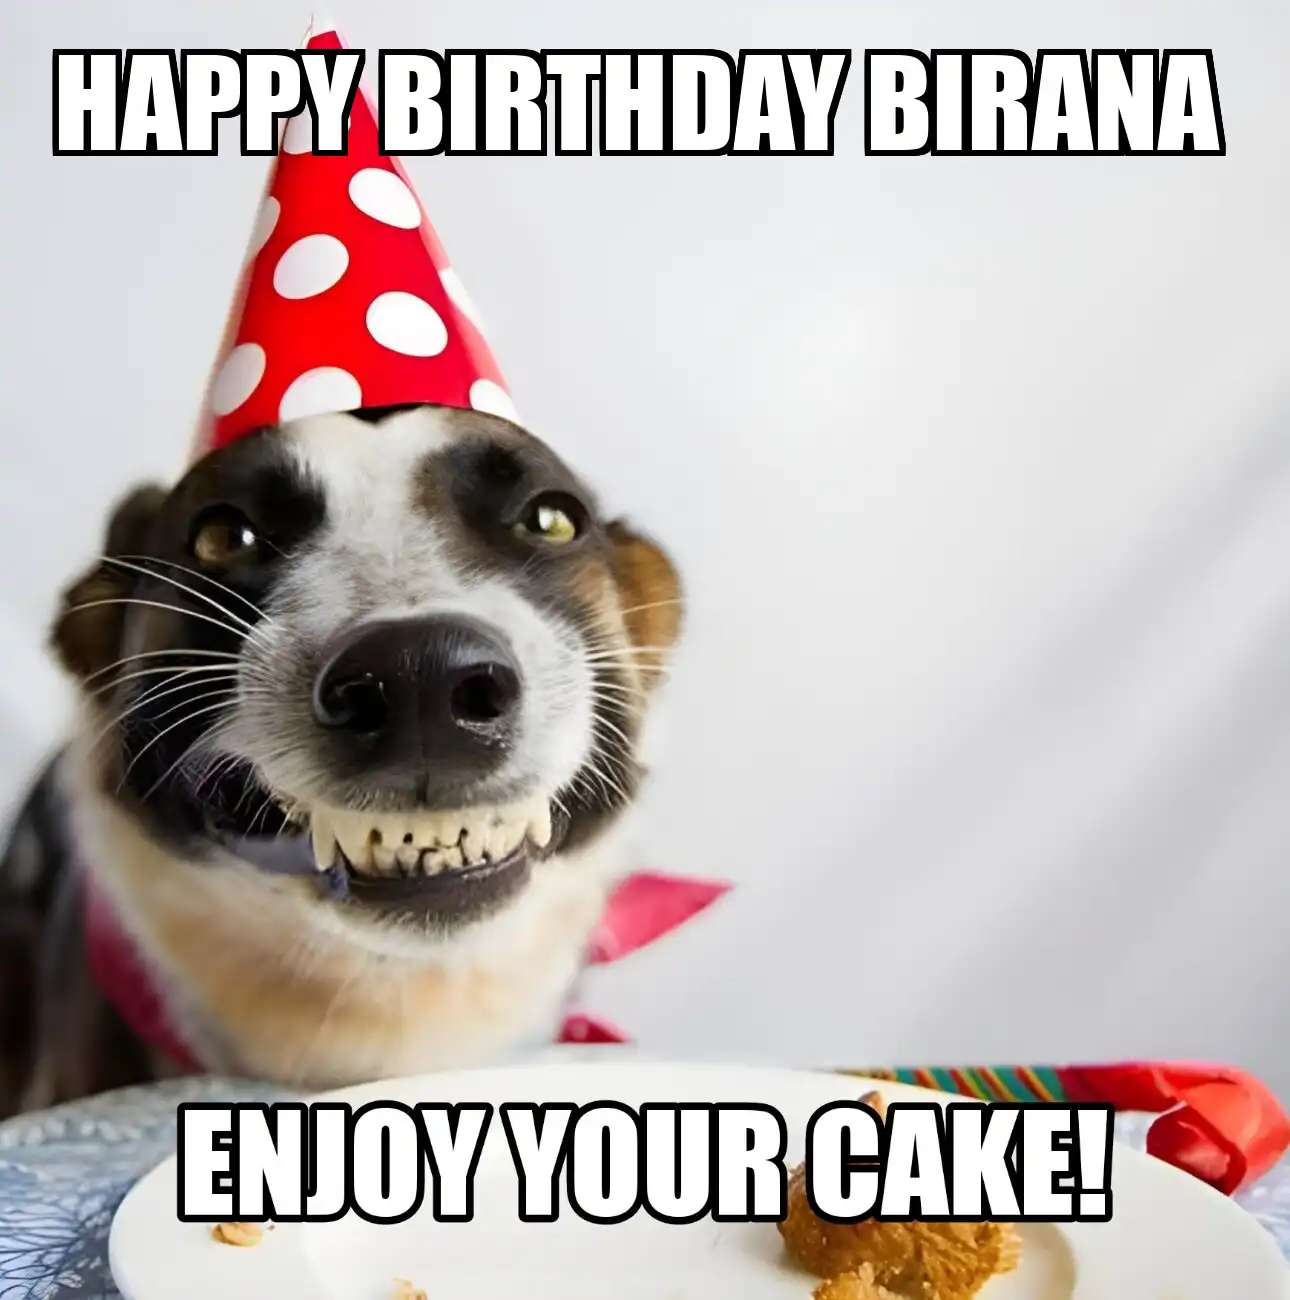 Happy Birthday Birana Enjoy Your Cake Dog Meme